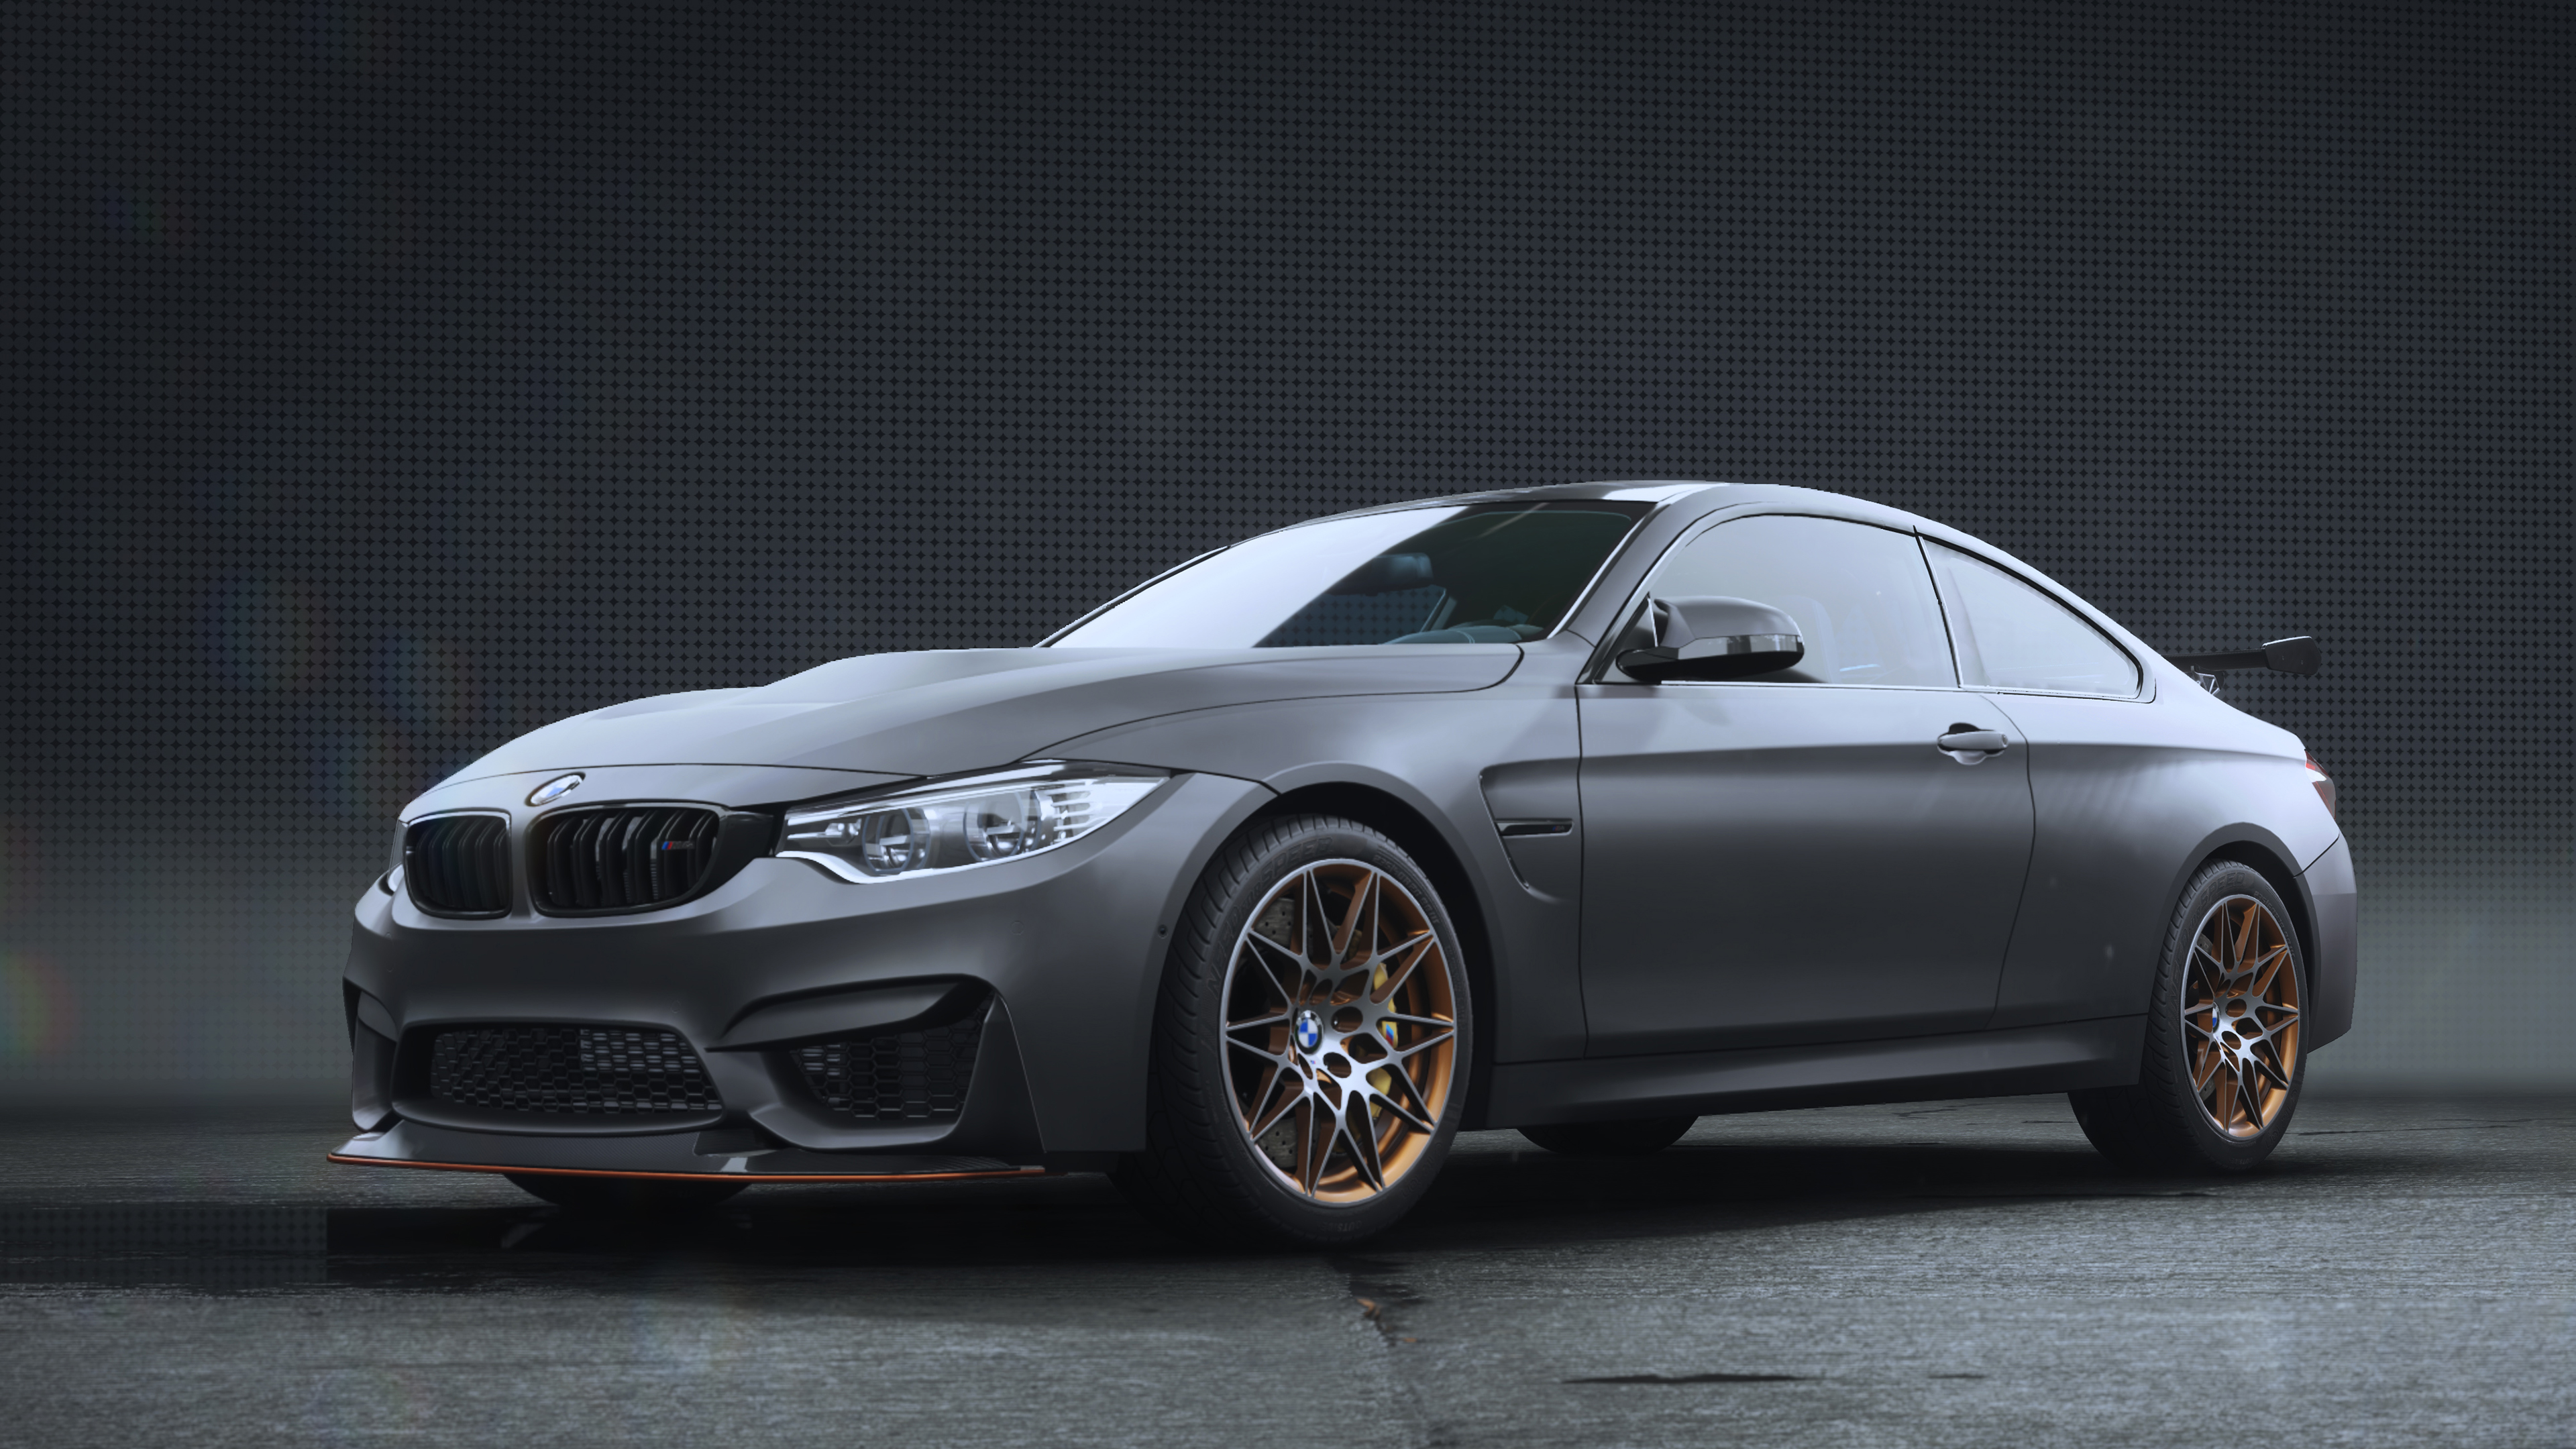 BMW M4 GTS (F82) | Need for Speed Wiki | Fandom